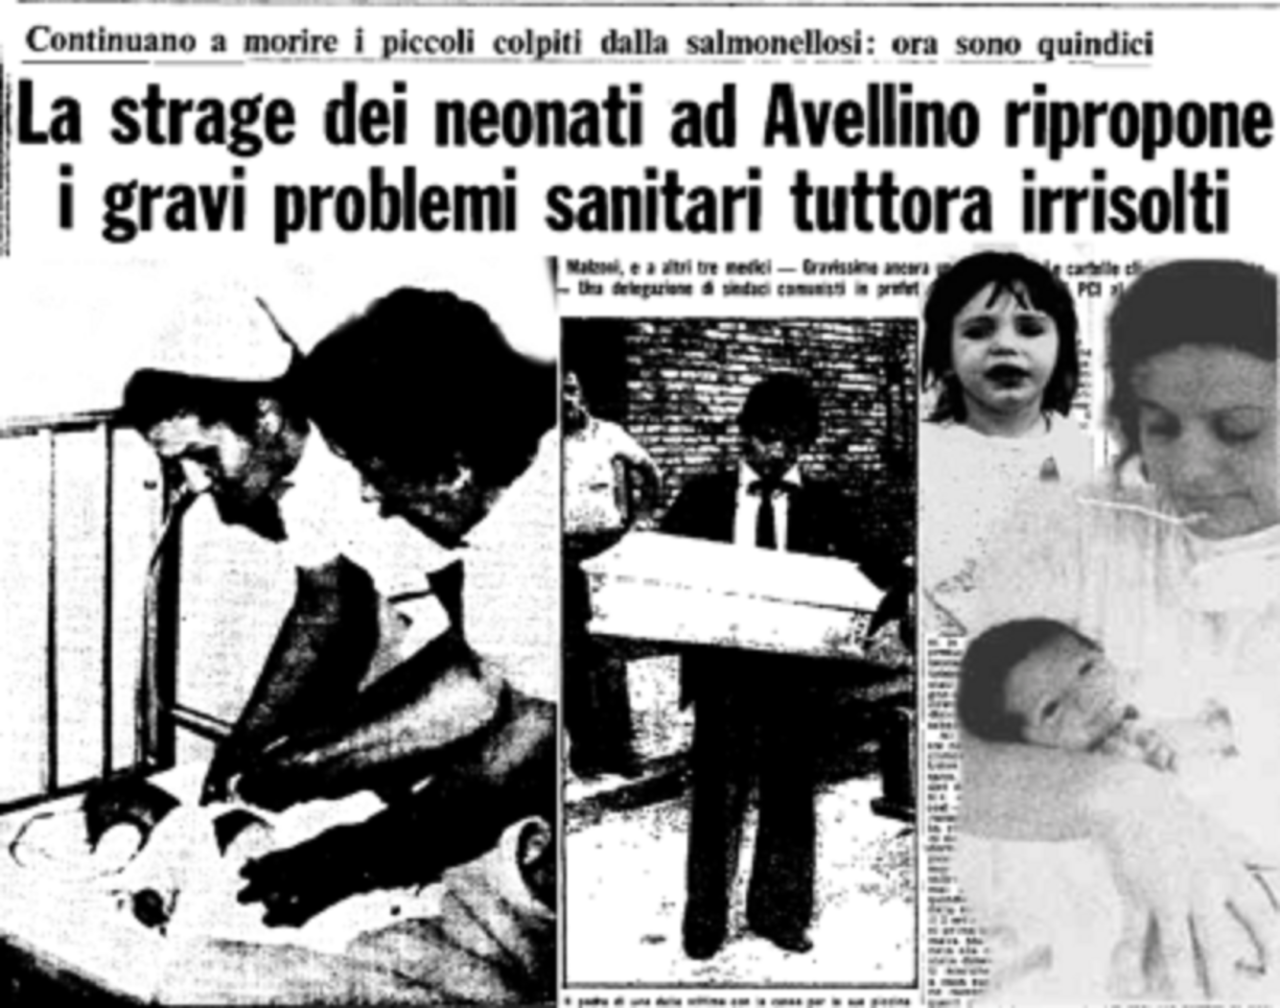 Tra passato e presente: l’epidemia di salmonella del 1975. Il caso Avellino